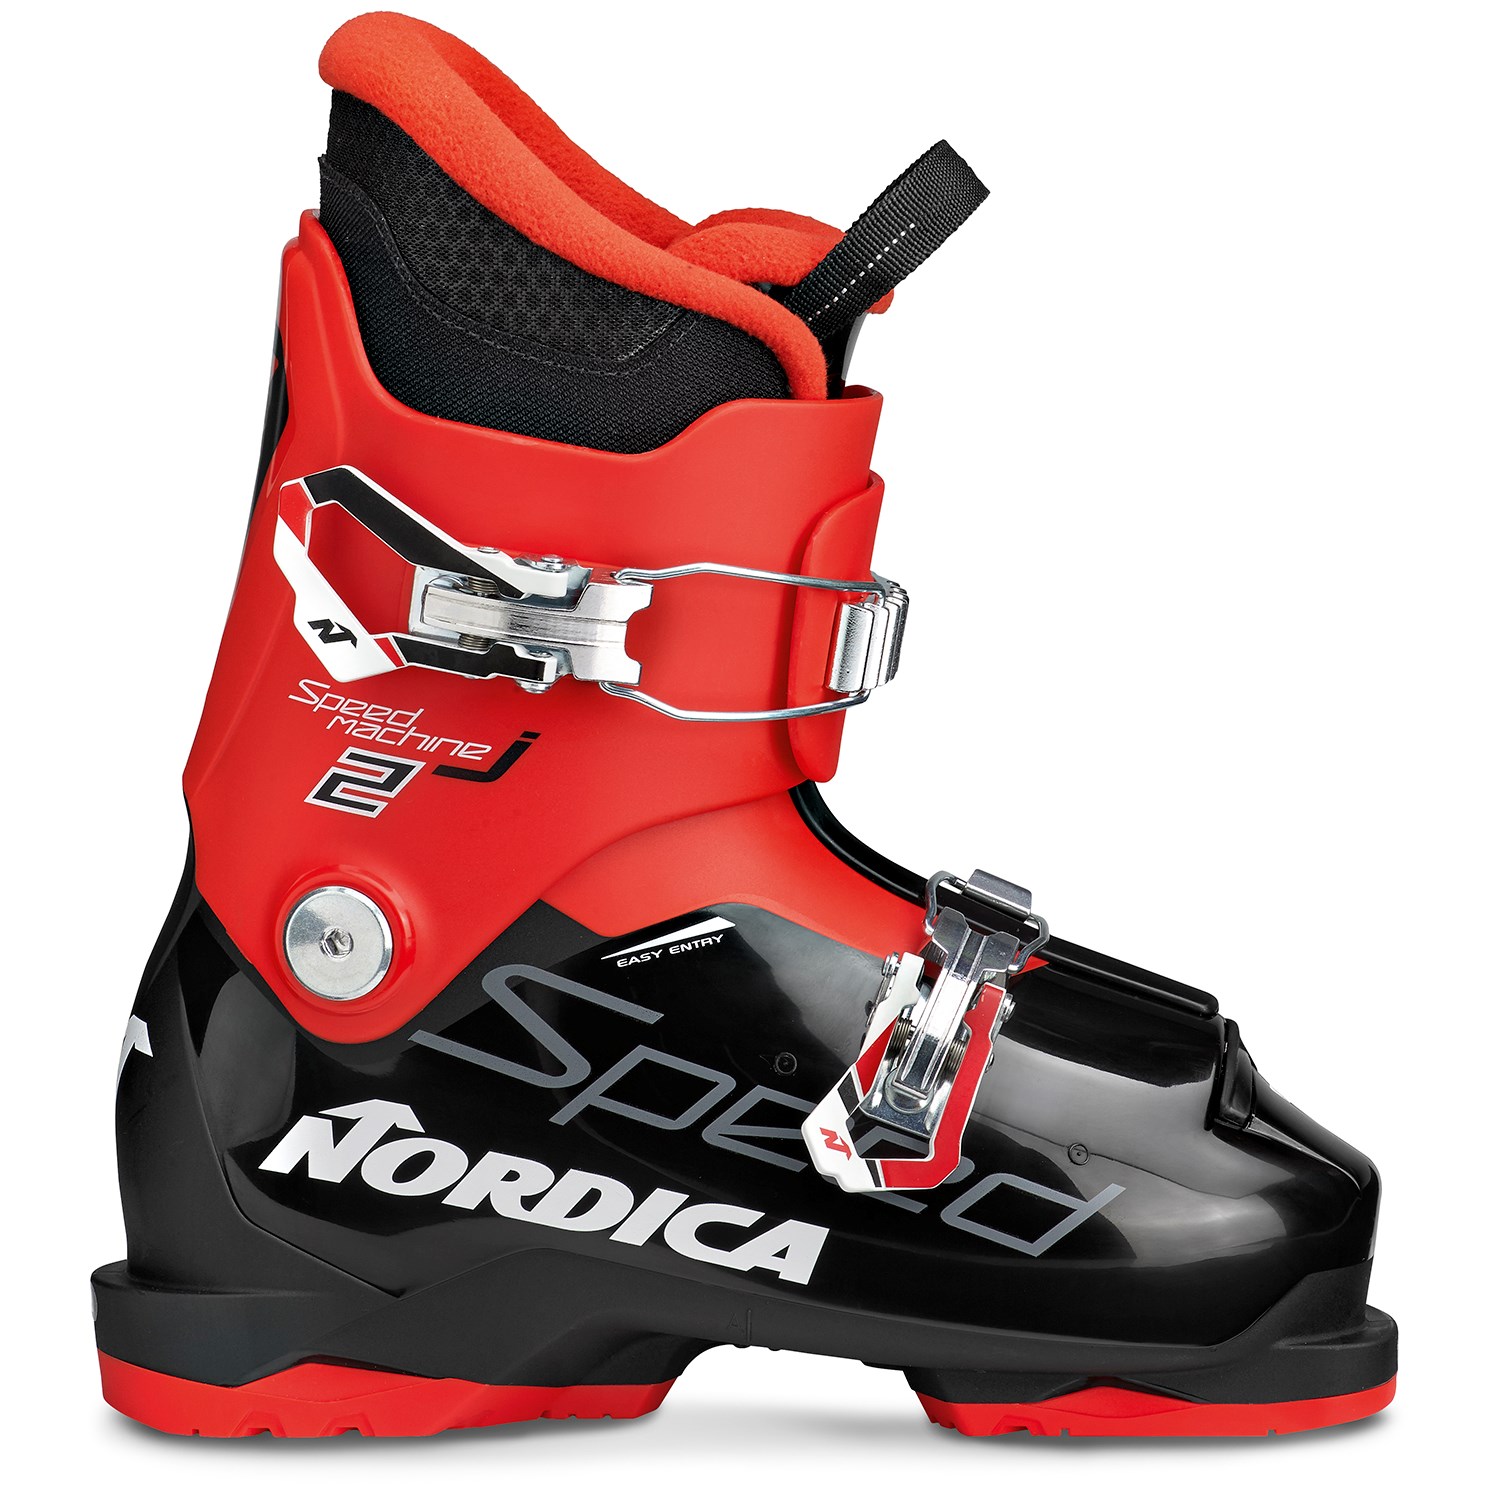 16.5 ski boots